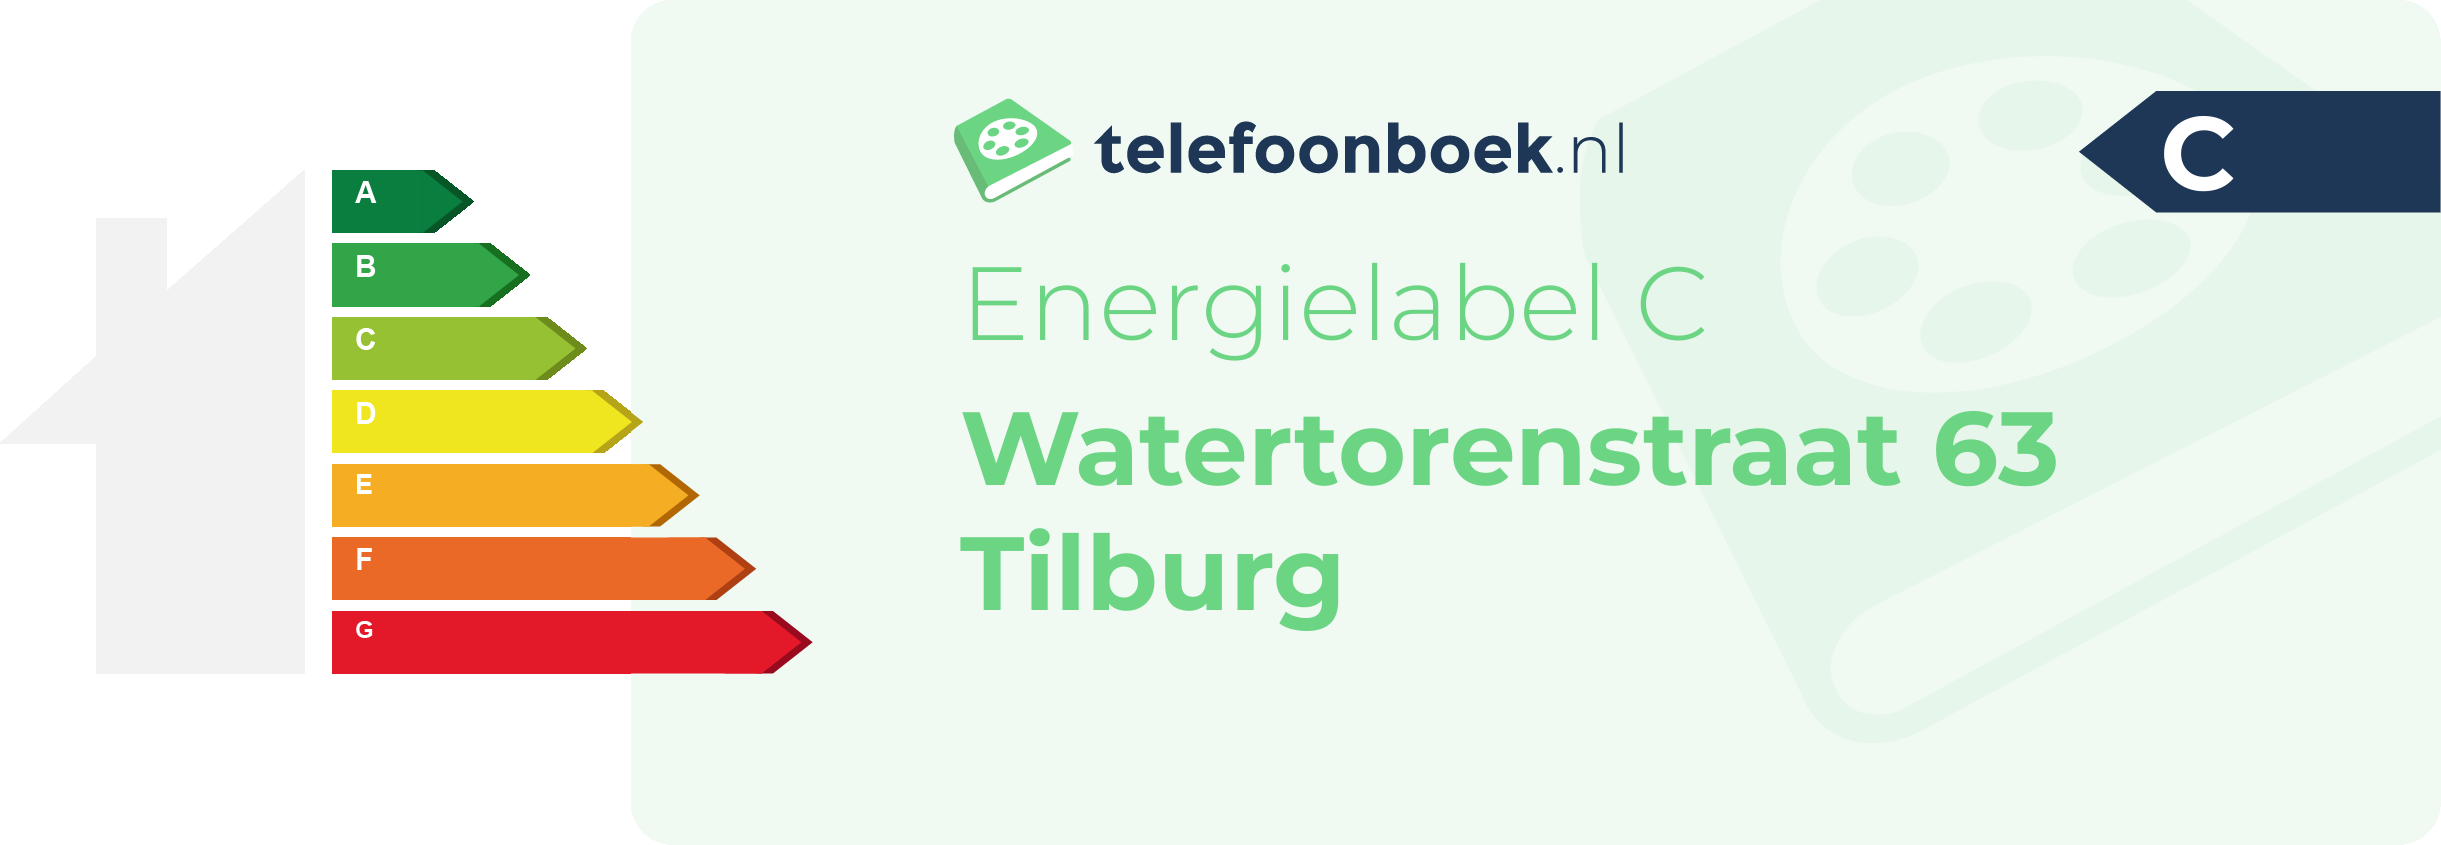 Energielabel Watertorenstraat 63 Tilburg